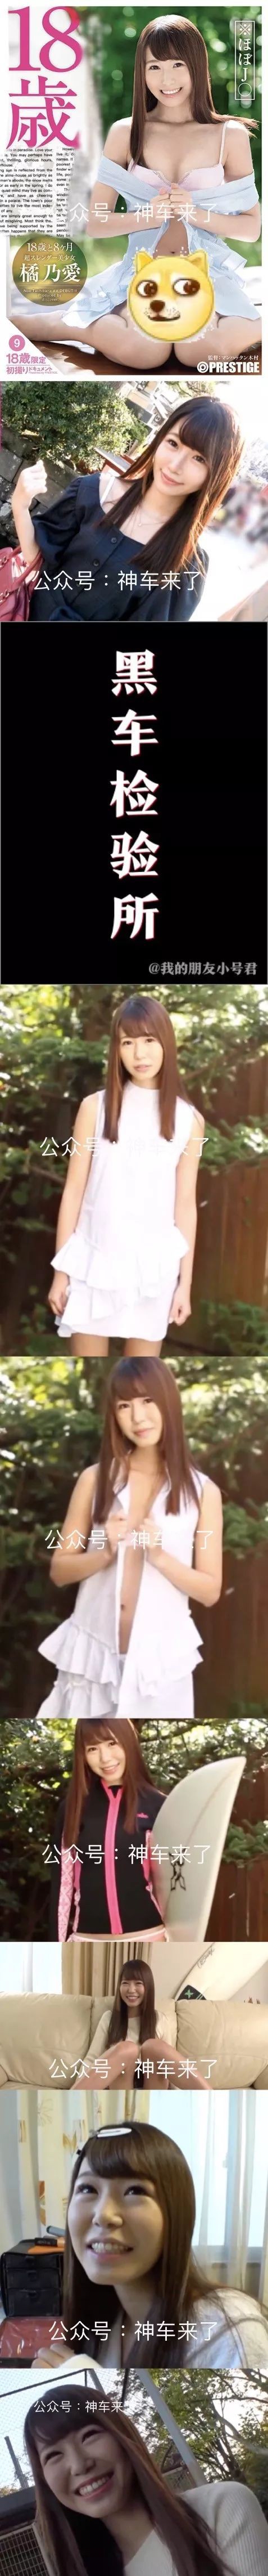 蚊香社美少女系列推出18岁少女橘乃爱出道，出道作品DIC-054